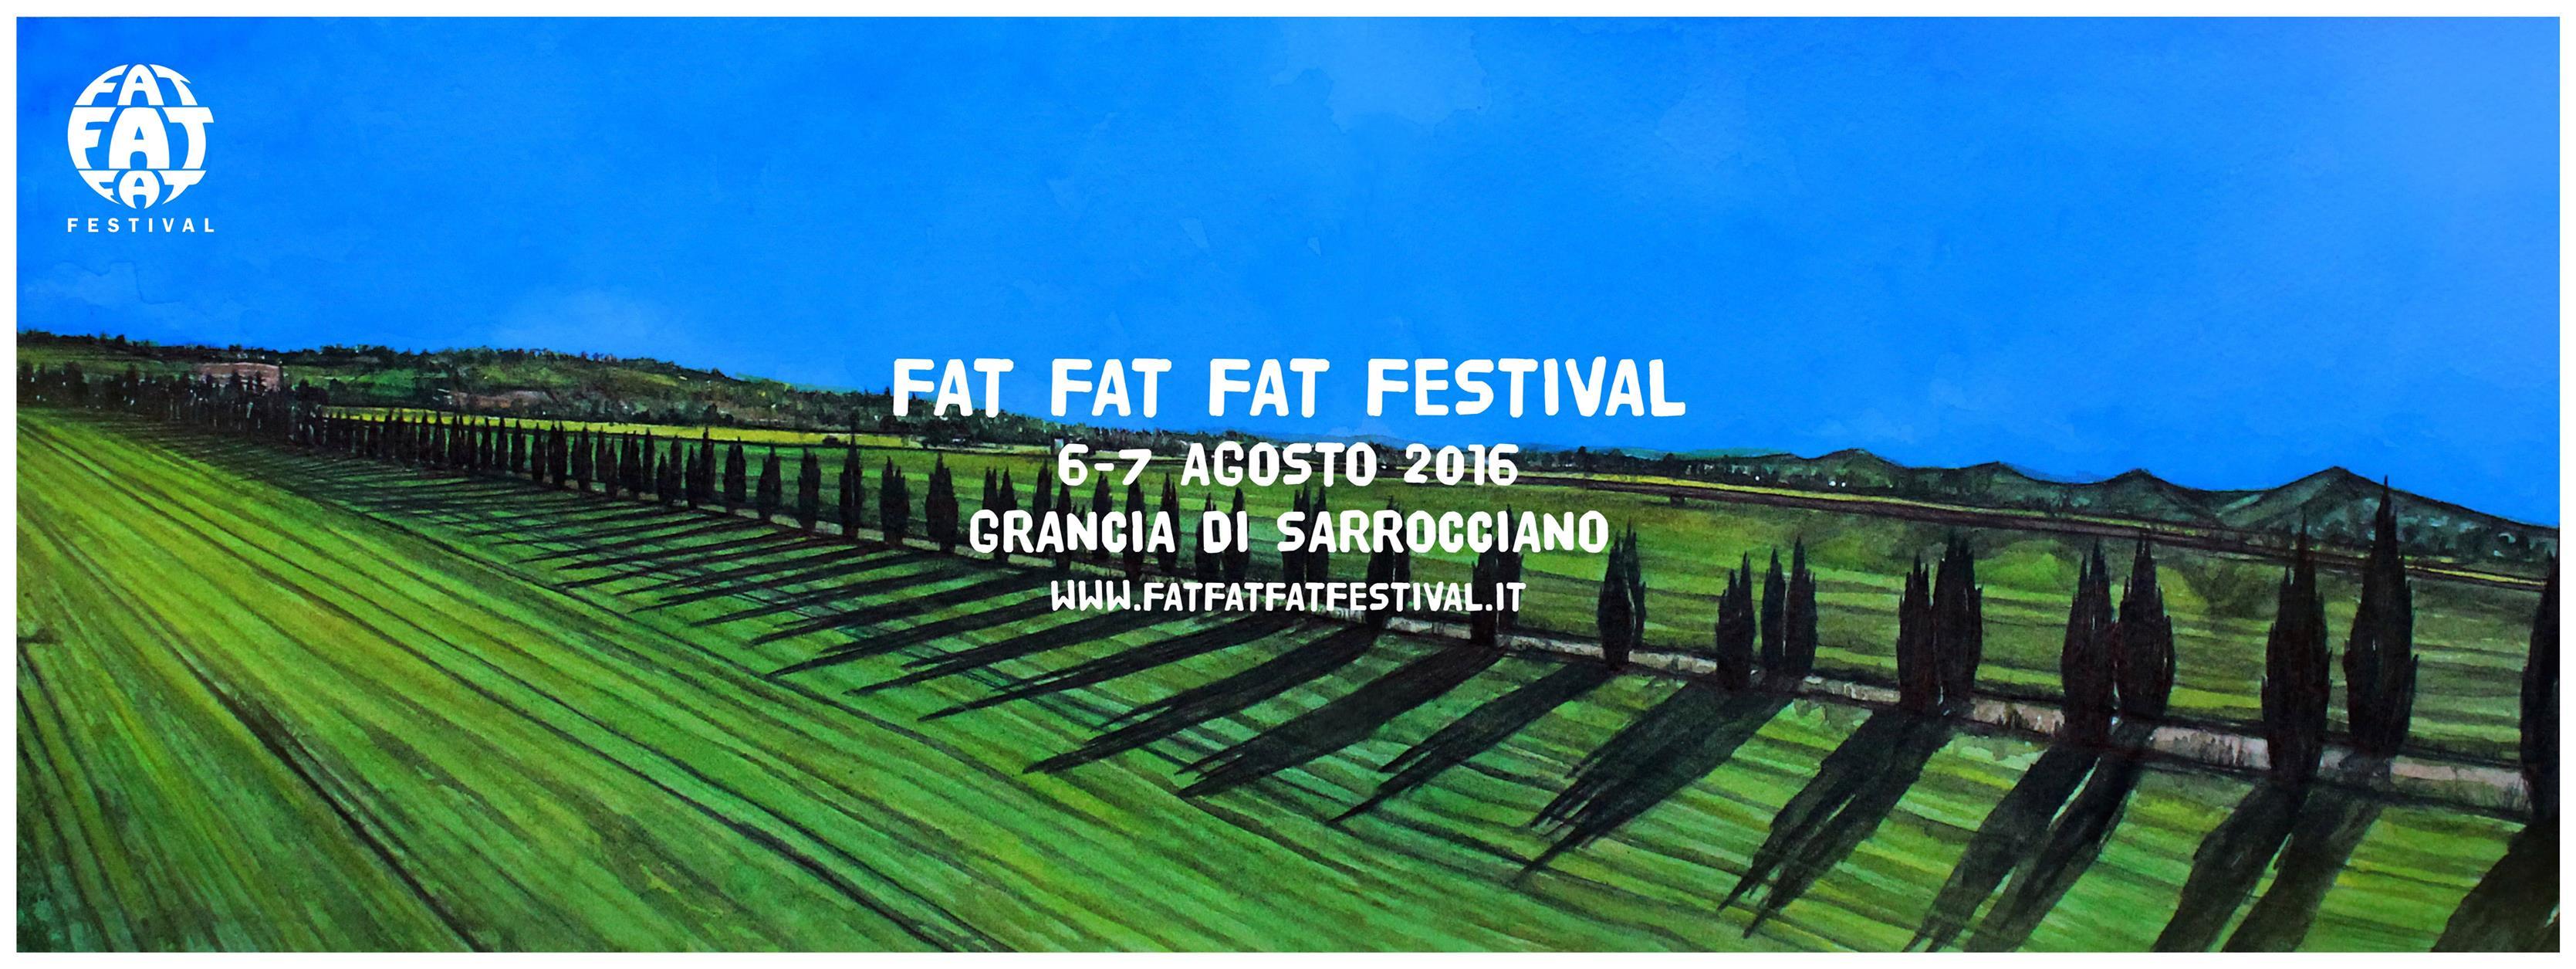 Il meglio della musica elettronica al FAT FAT FAT Festival